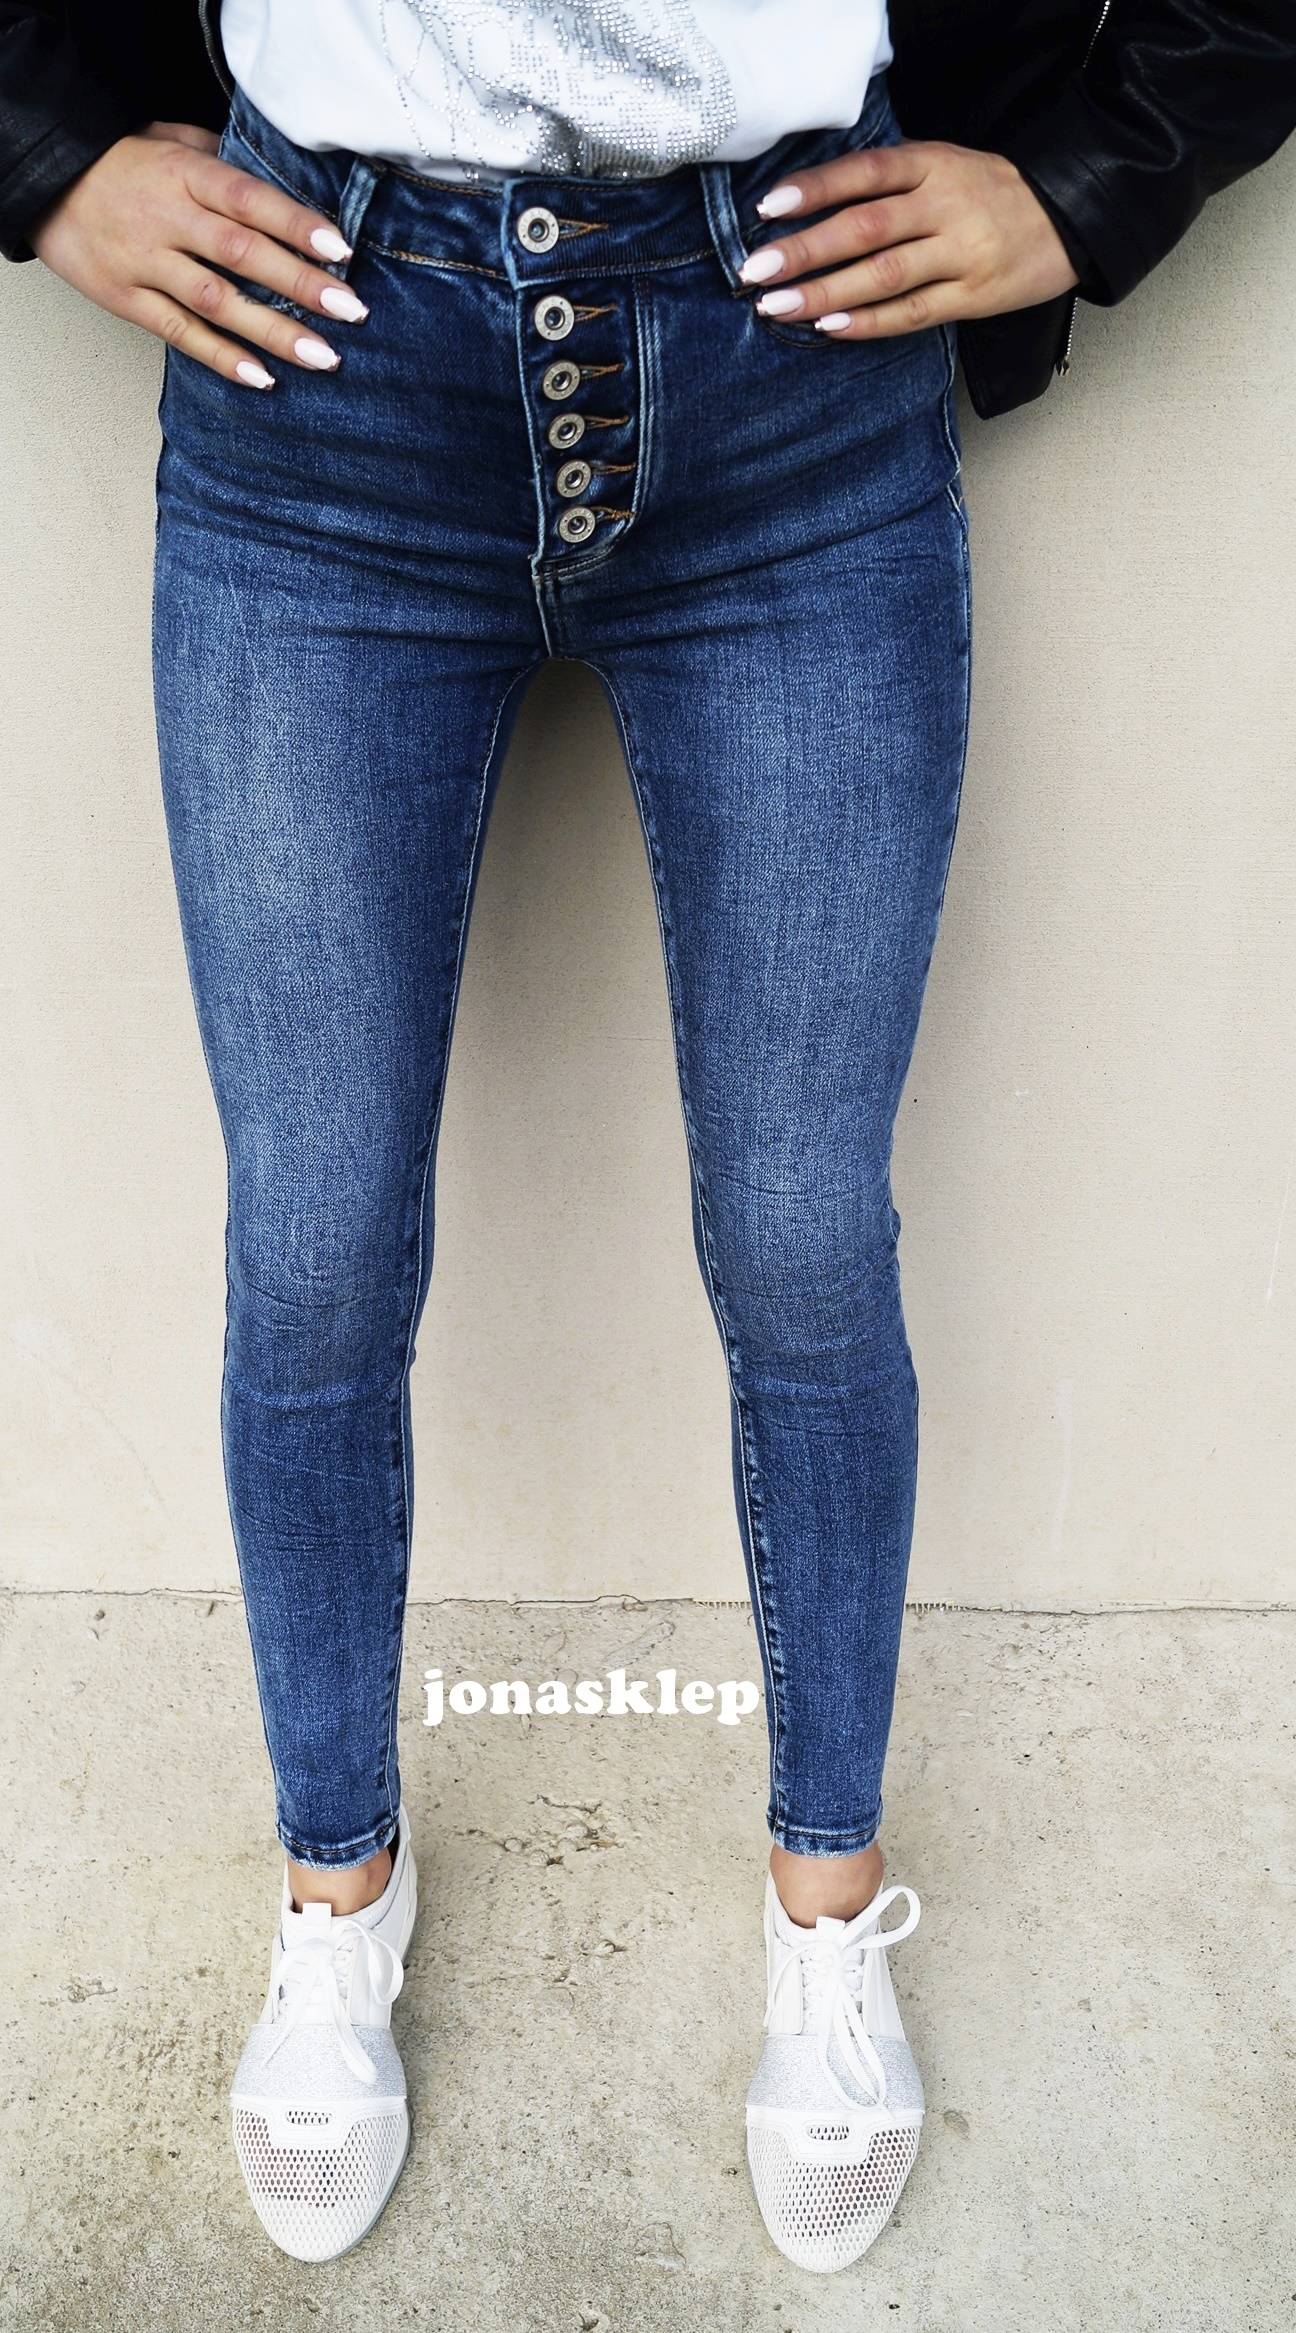 Jeansy Damskie: Spodnie Dżinsowe Ciemne i Jasne - Cama Shopping ♥ Sklep  Odzieżowy Online ♥️ Butik Online